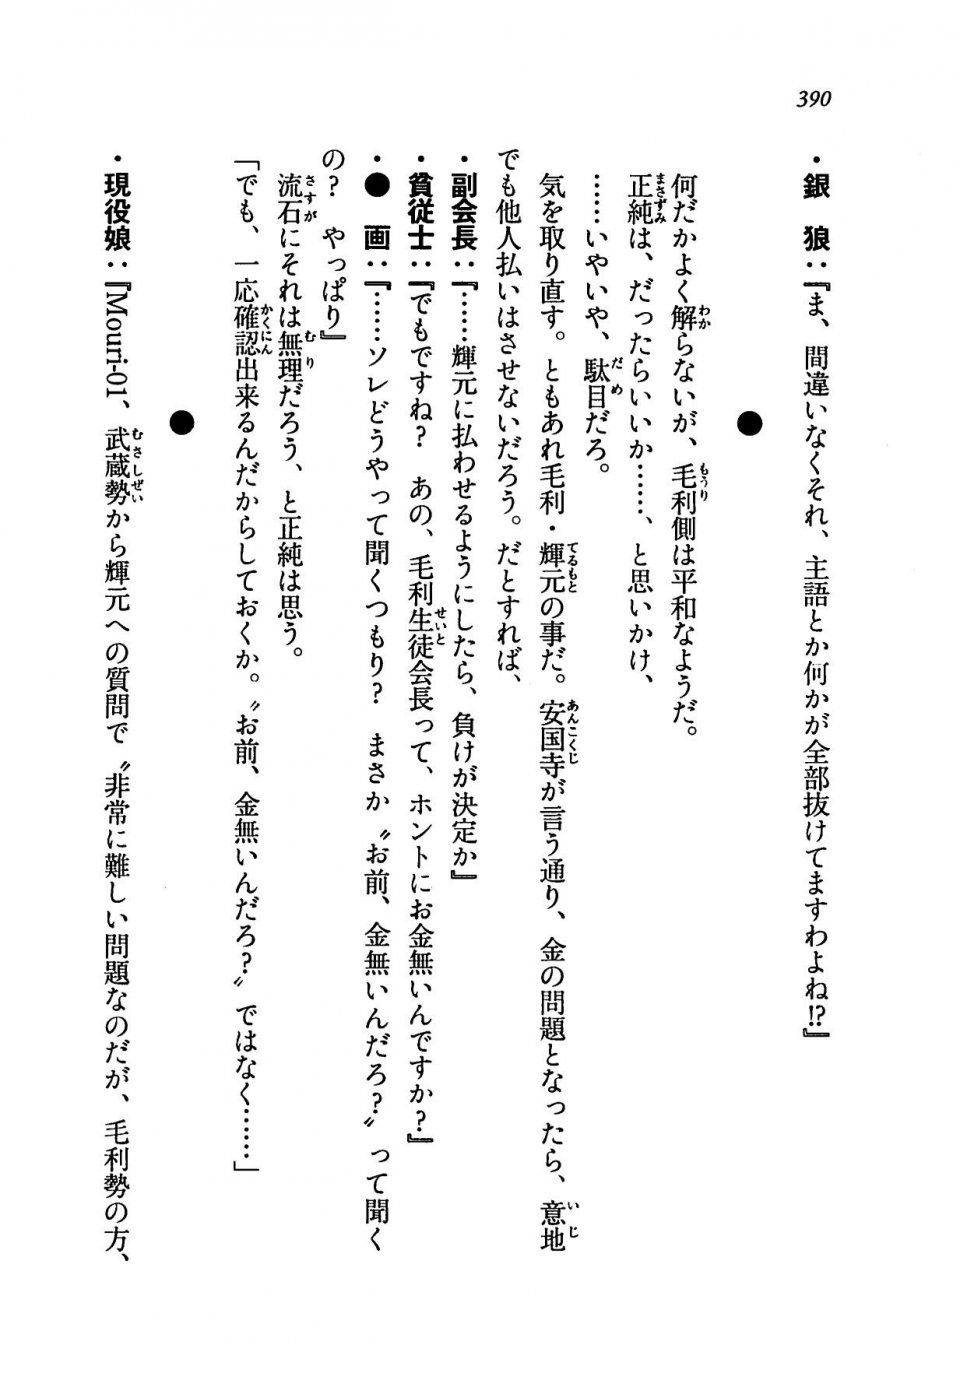 Kyoukai Senjou no Horizon LN Vol 19(8A) - Photo #390